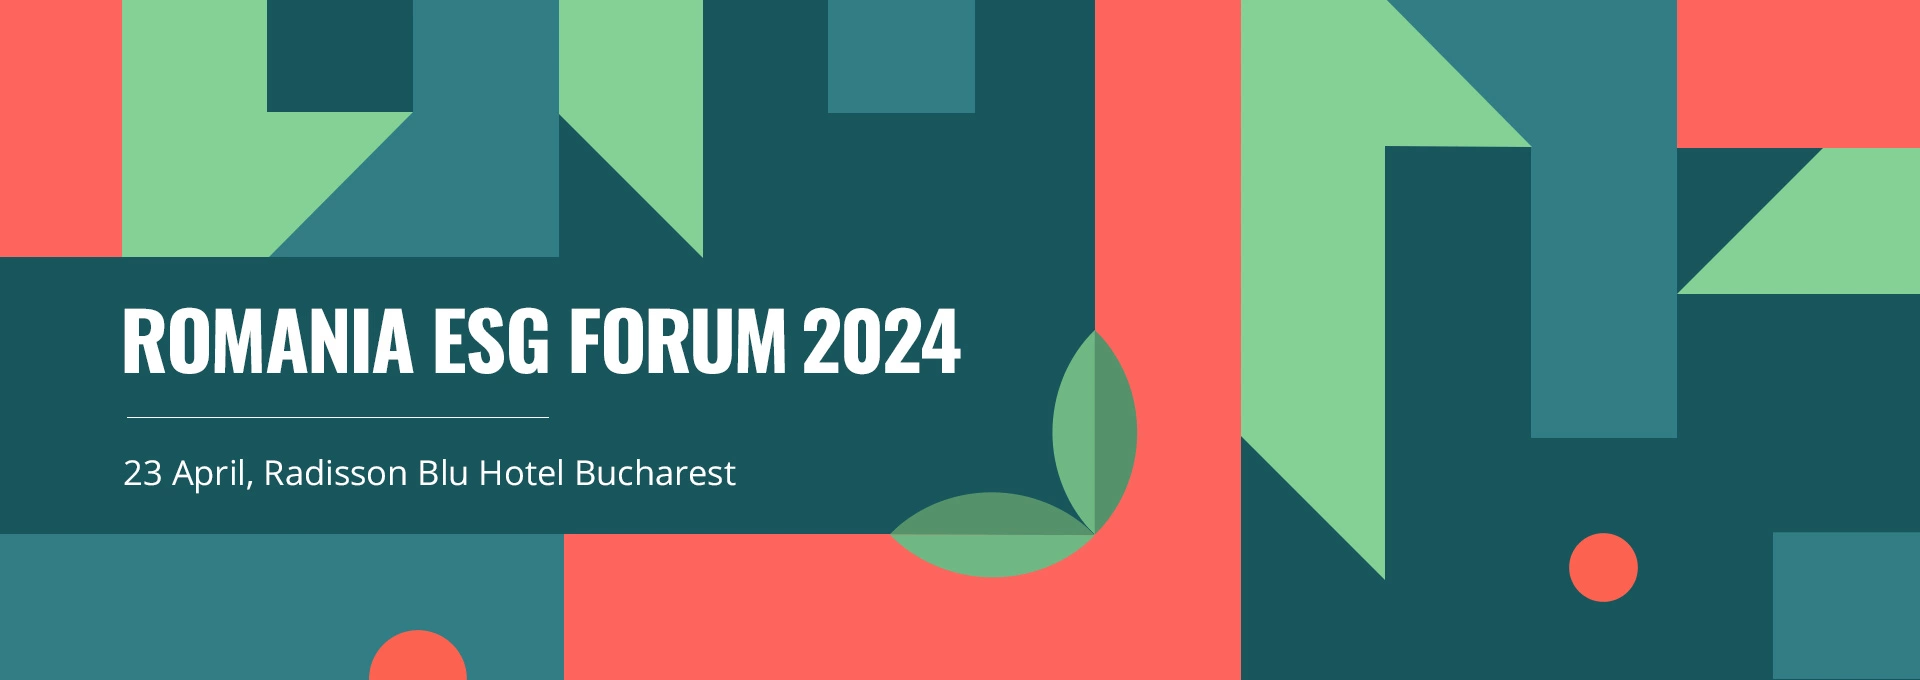 Romania ESG Forum 2024